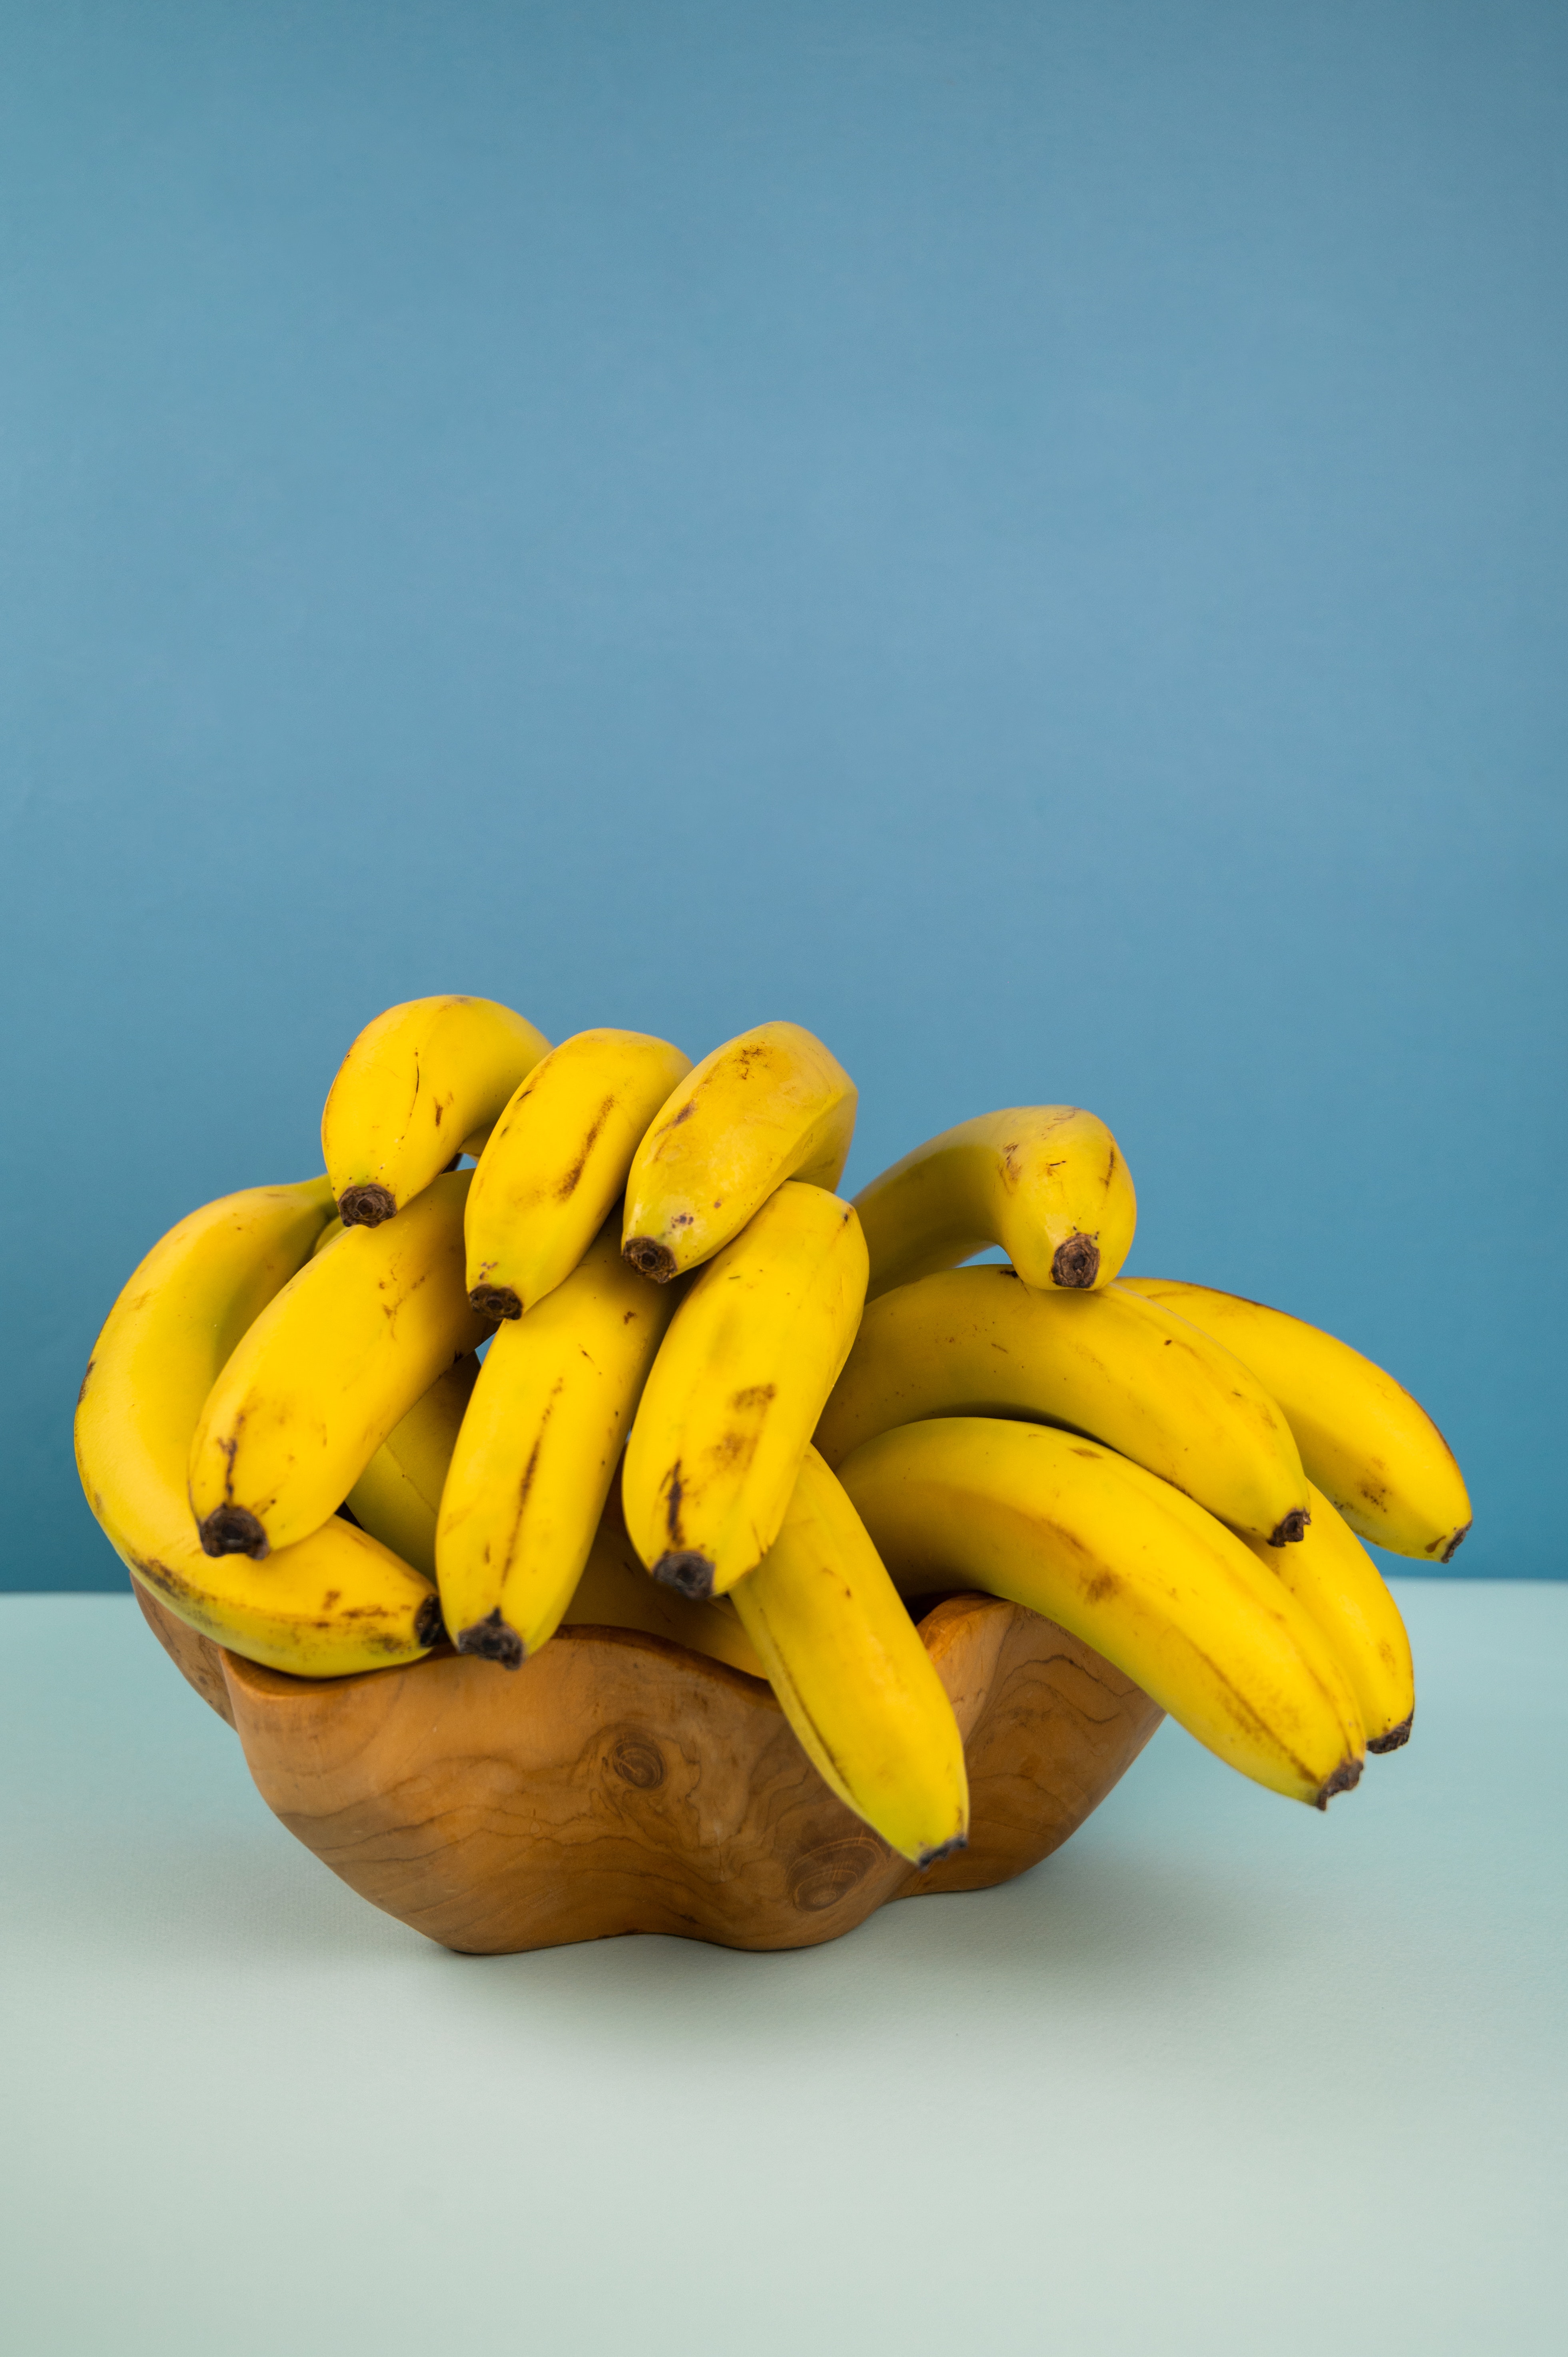 भारताविषयी बोलायचे झाले तर येथे केळीच्या ३३ जाती आढळतात. यापैकी १२ प्रकार अतिशय चवदार मानले जातात.